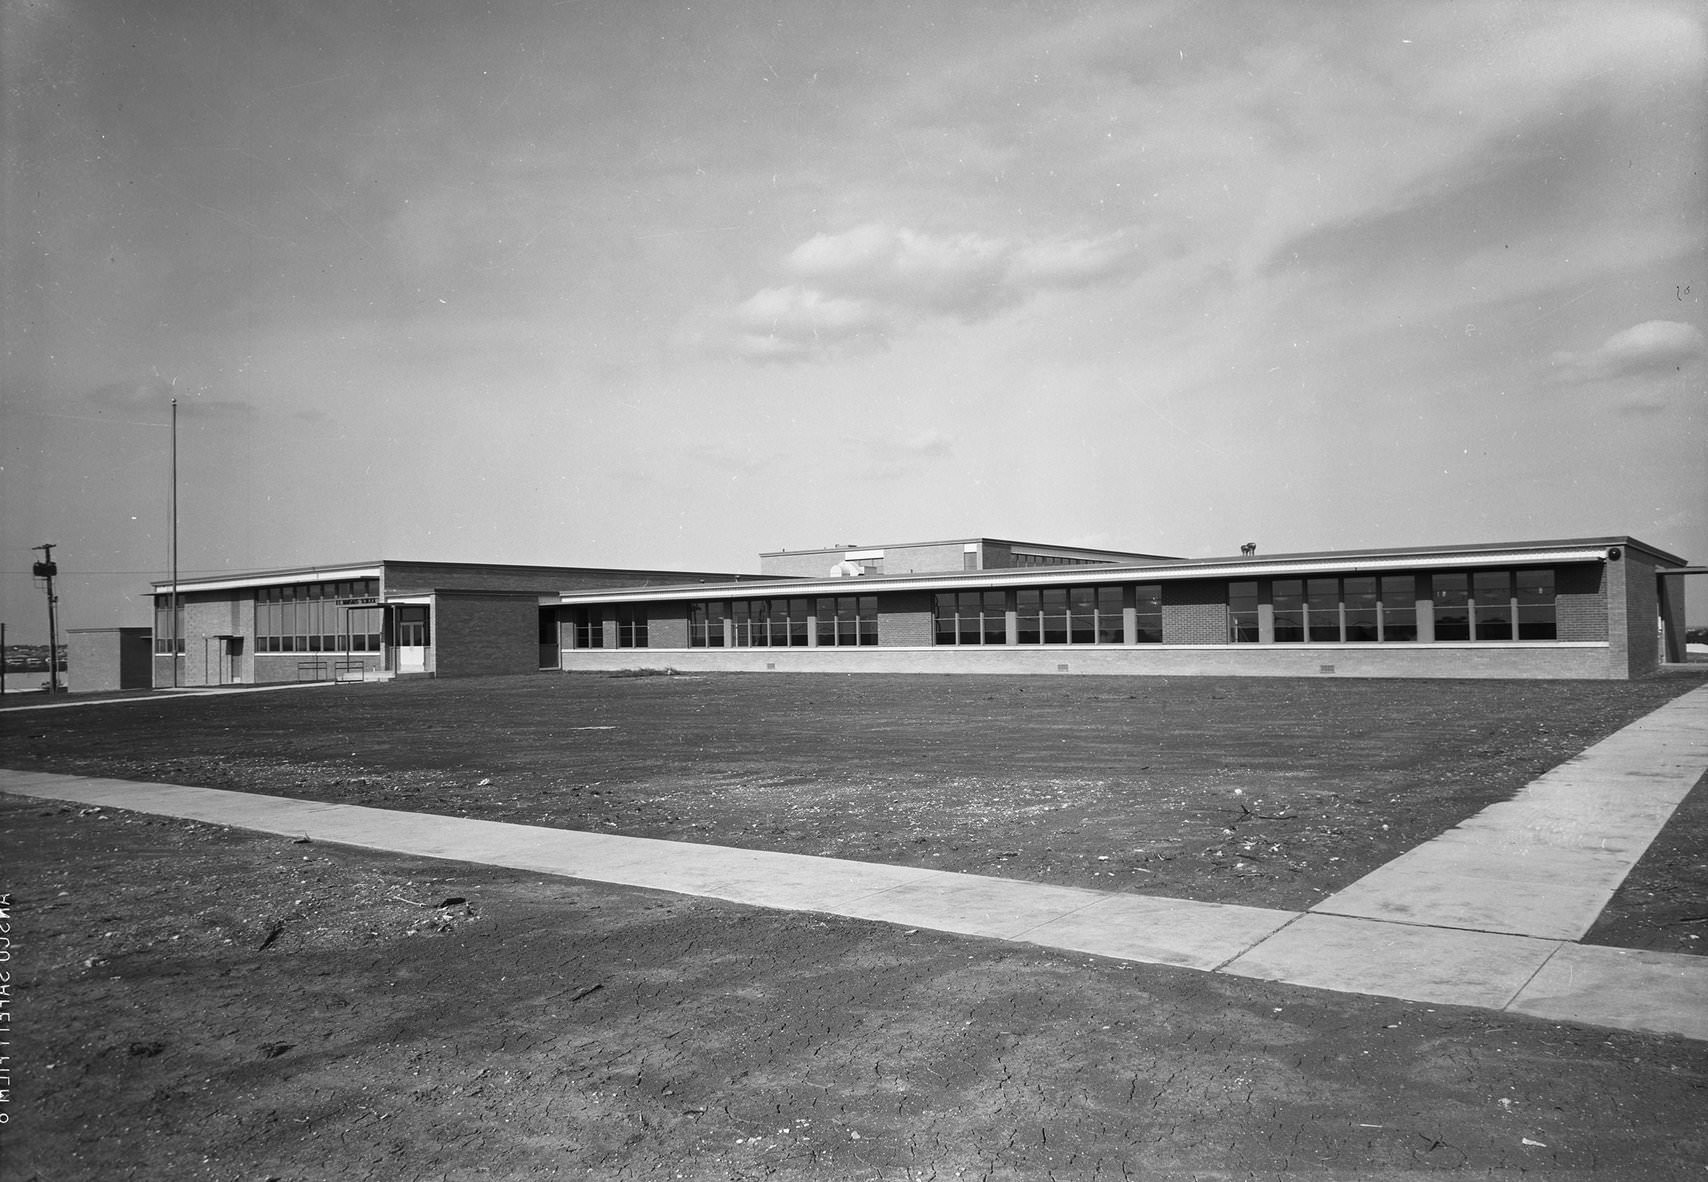 T.L. Marsalis School building under construction. Dallas, Texas, 1958